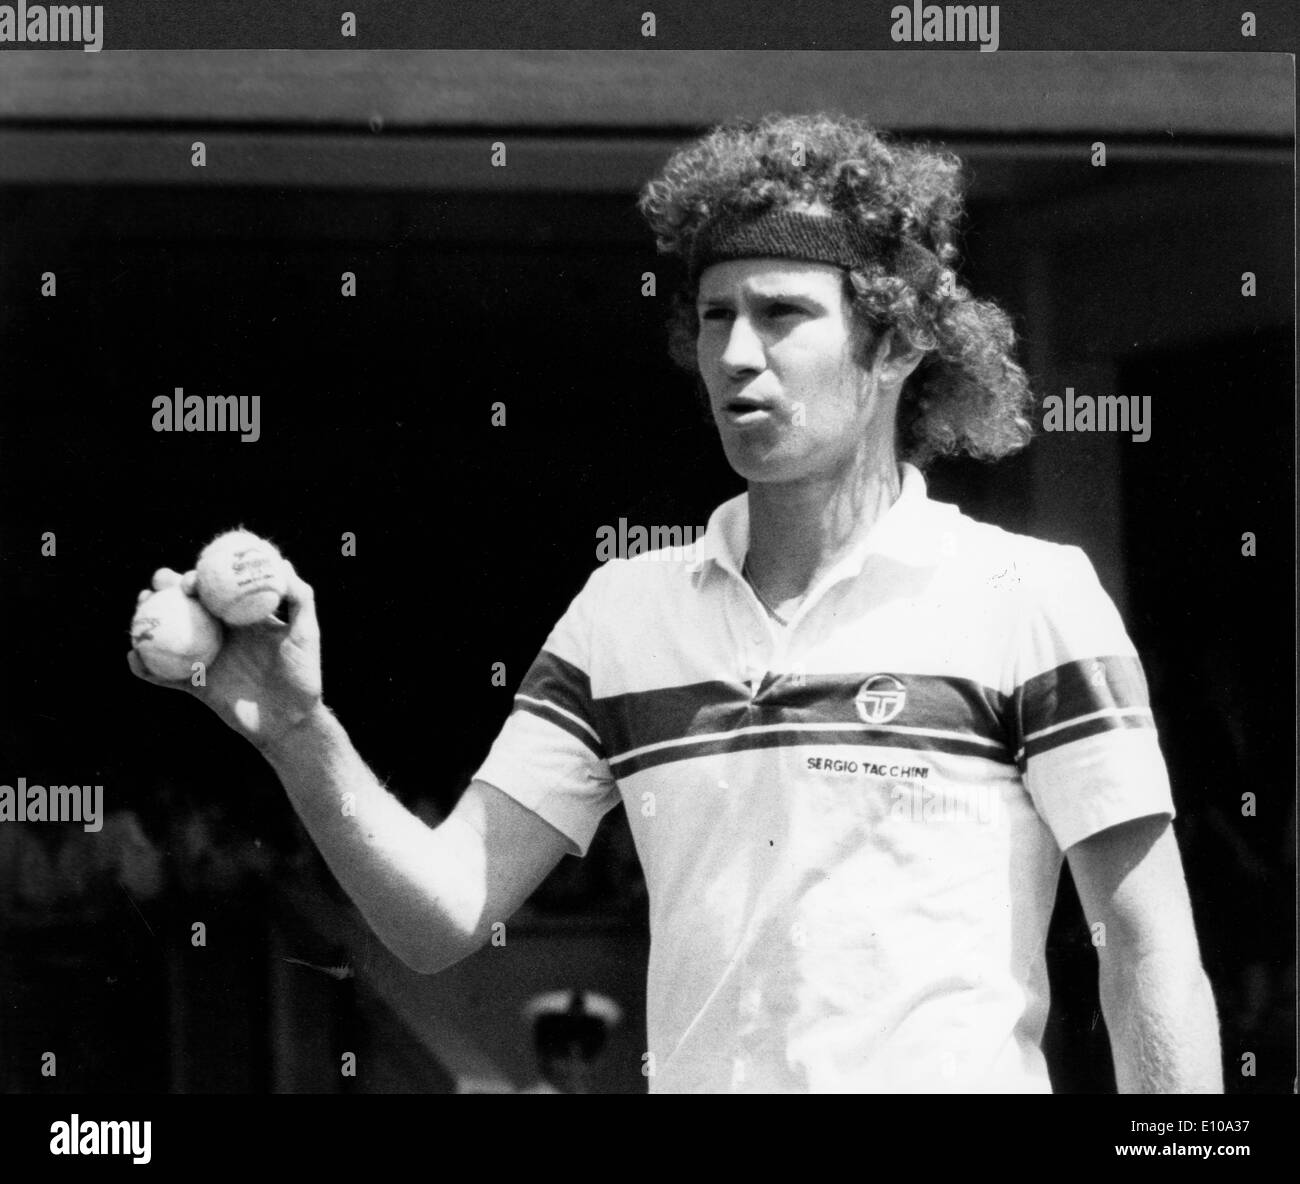 Tennis player John McEnroe plays at Wimbledon Stock Photo